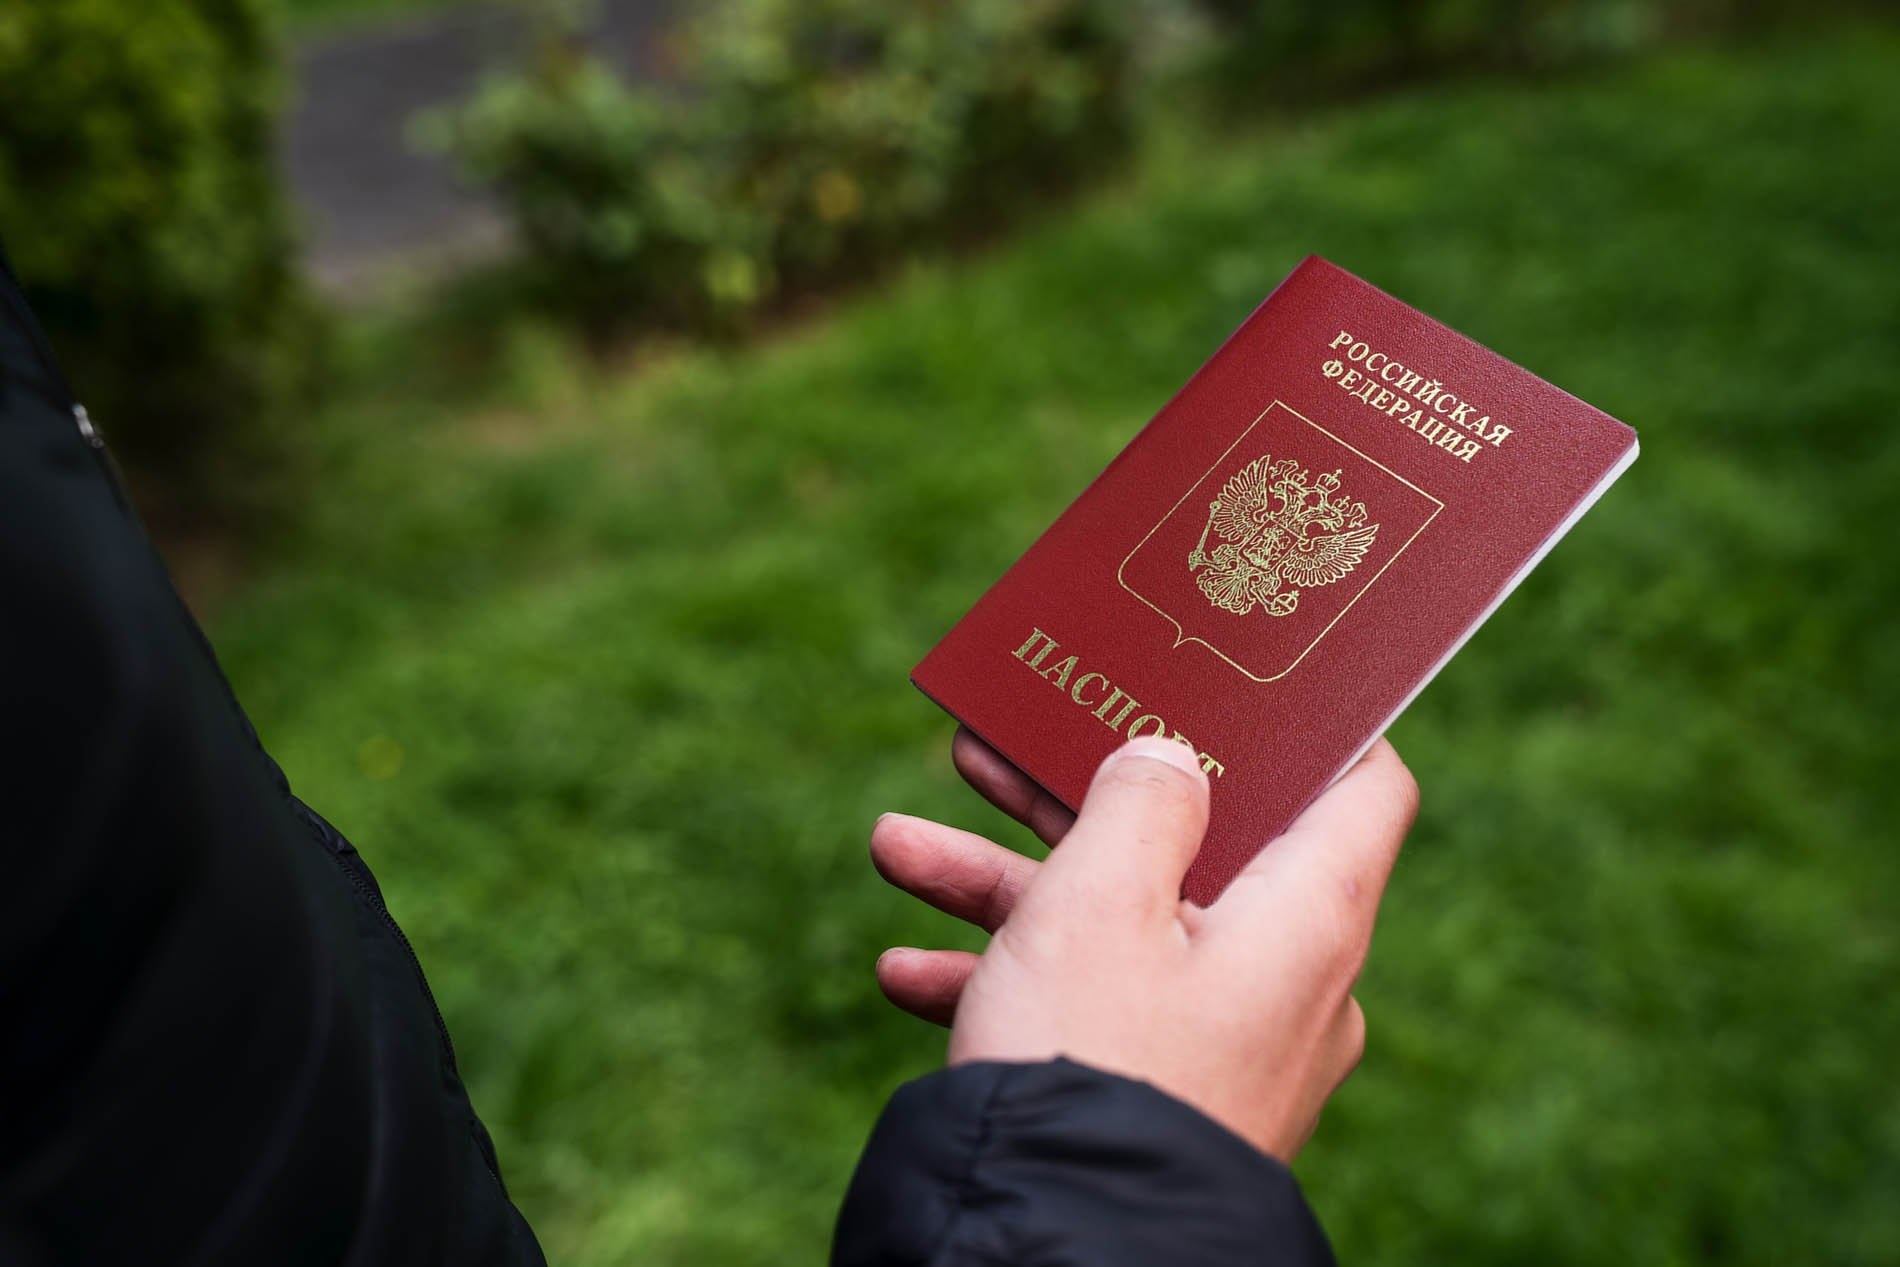 Rusiya səfirliklərində pasport verilməsi DAYANDIRILDI